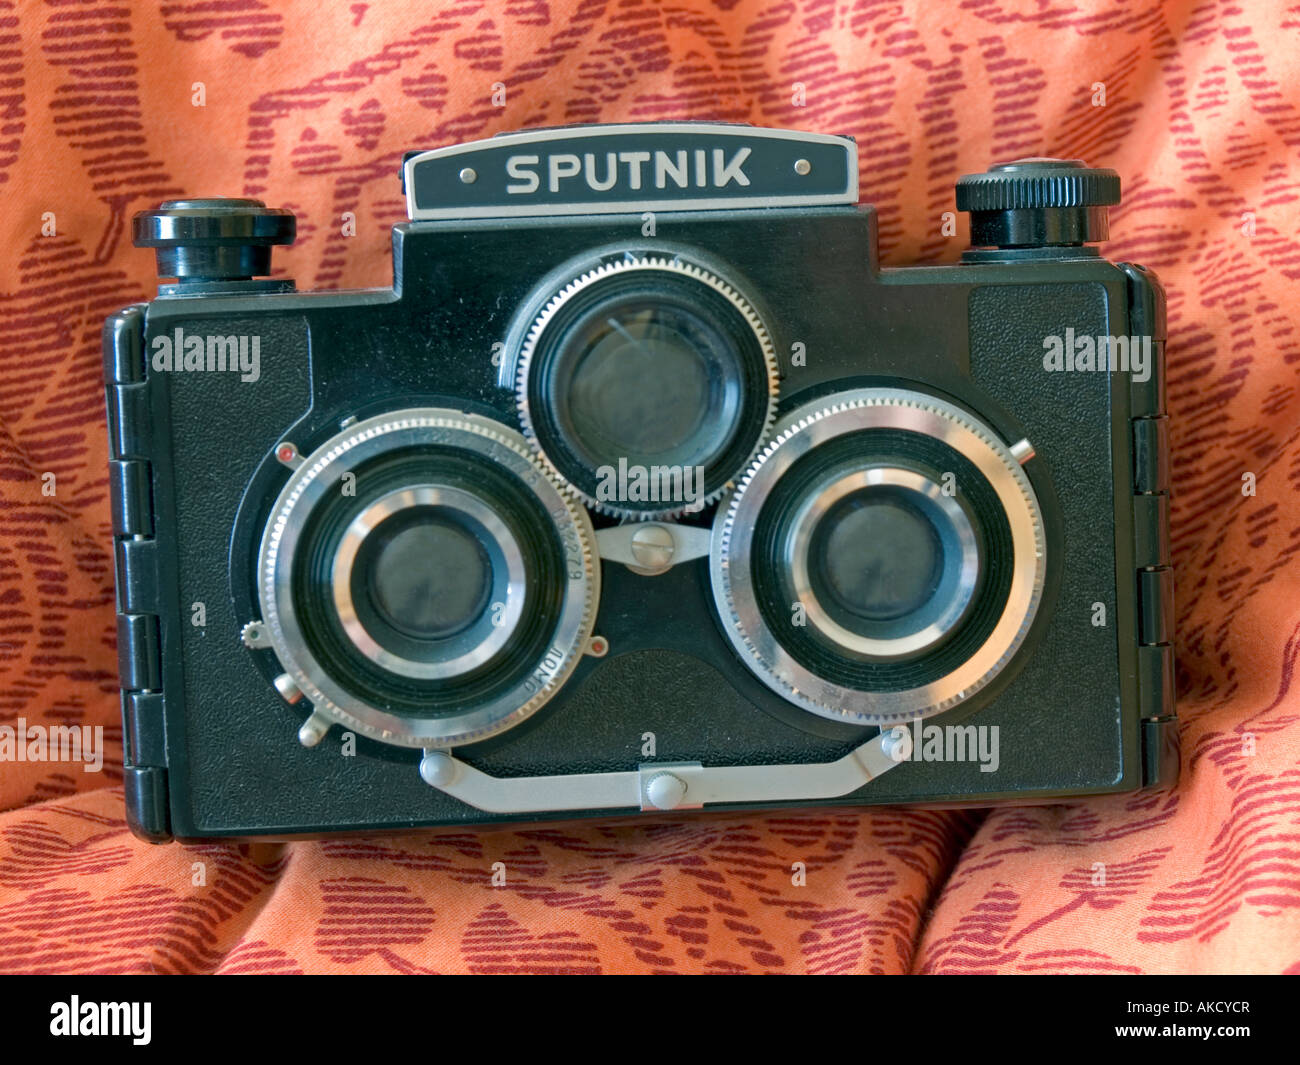 Historique ancienne type appareil photo appareil photo panorama Spoutnik Banque D'Images